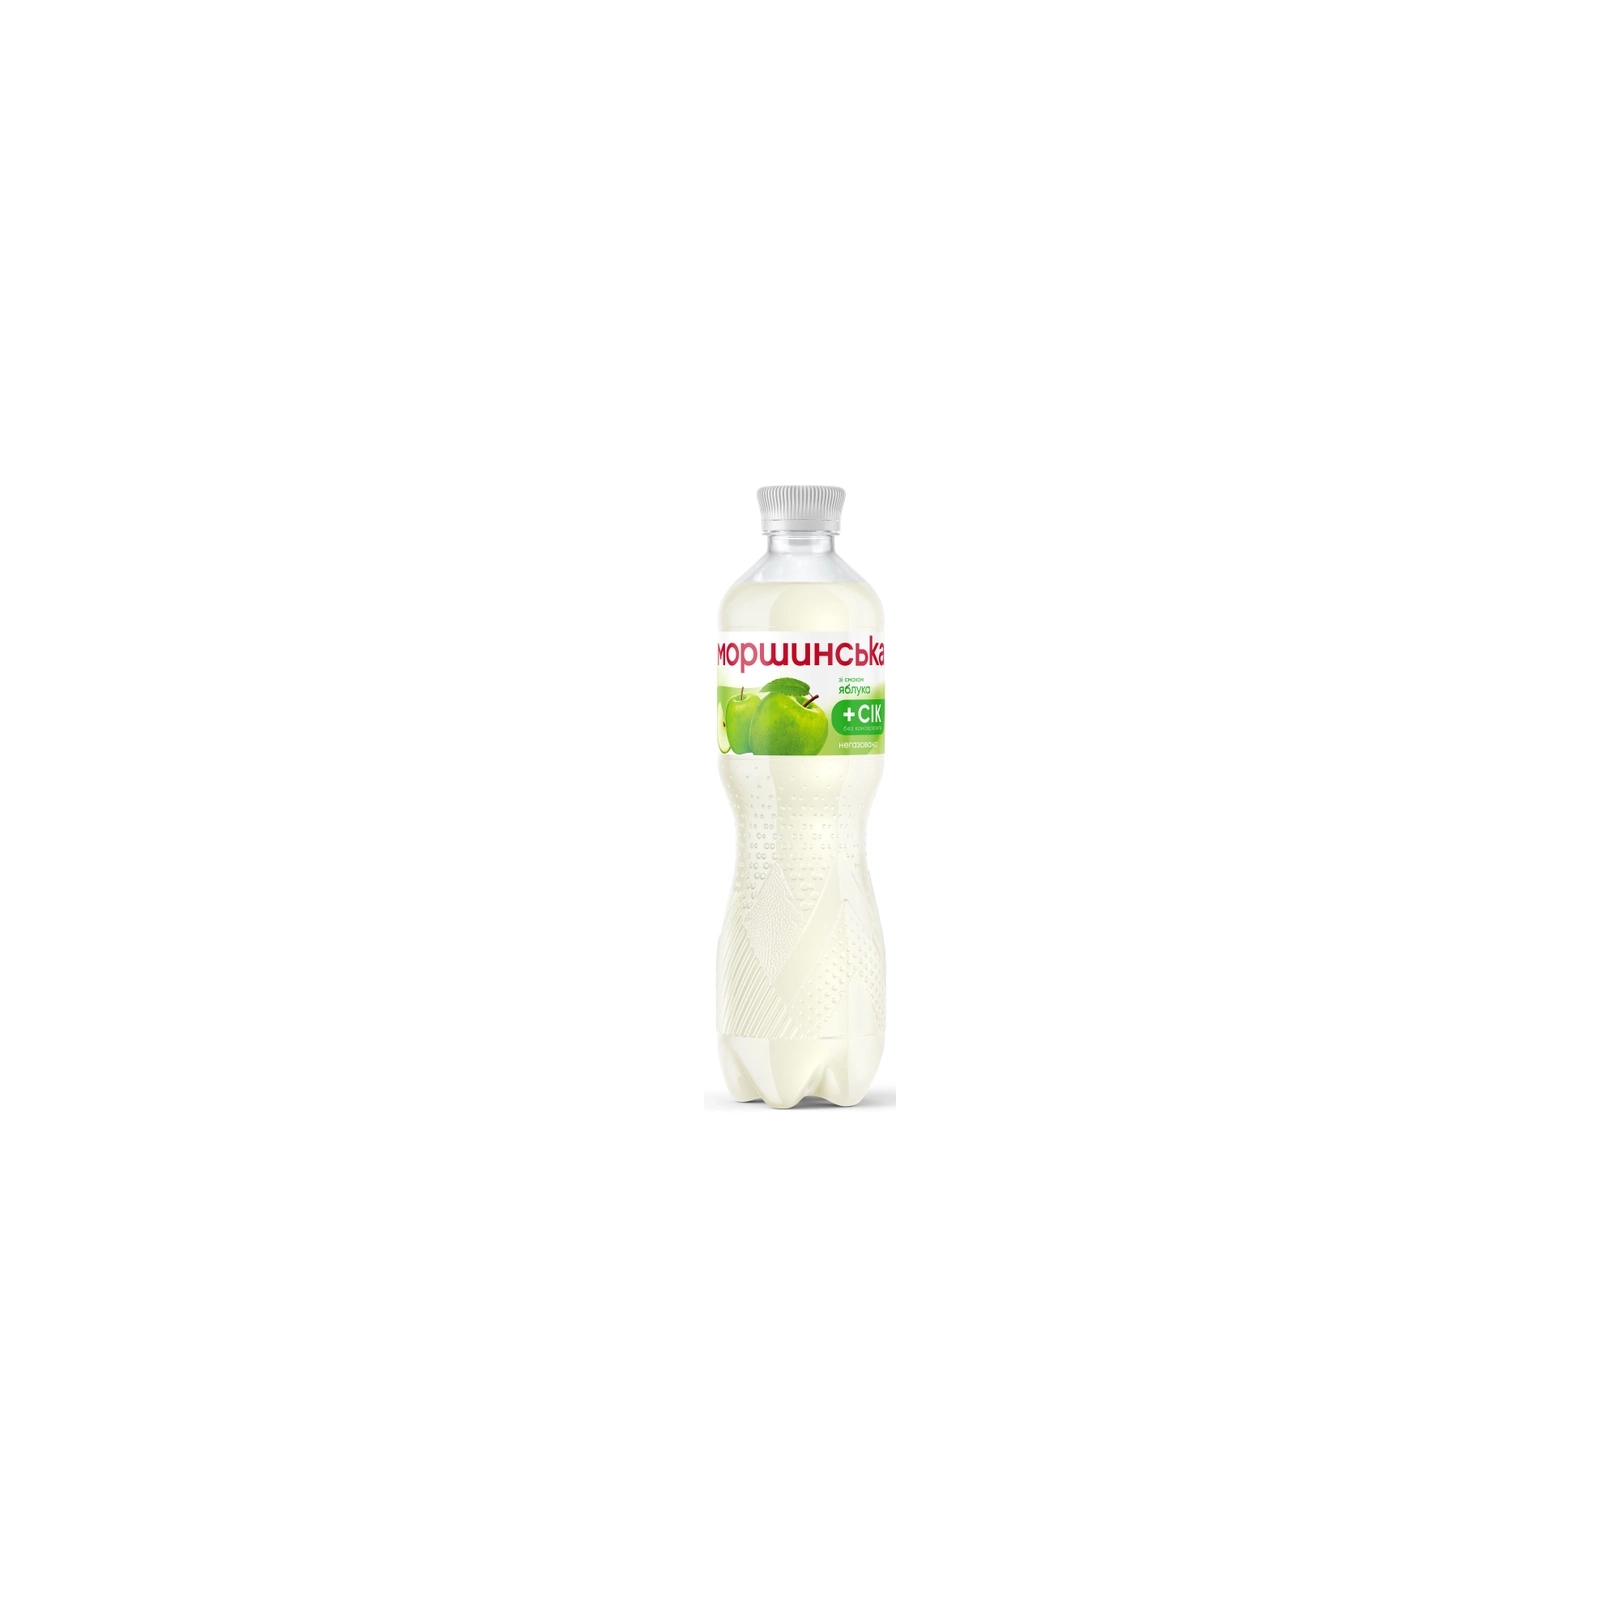 Напиток Моршинська сокосодержащий негазированный со вкусом яблока 0.5 л (4820017002585)